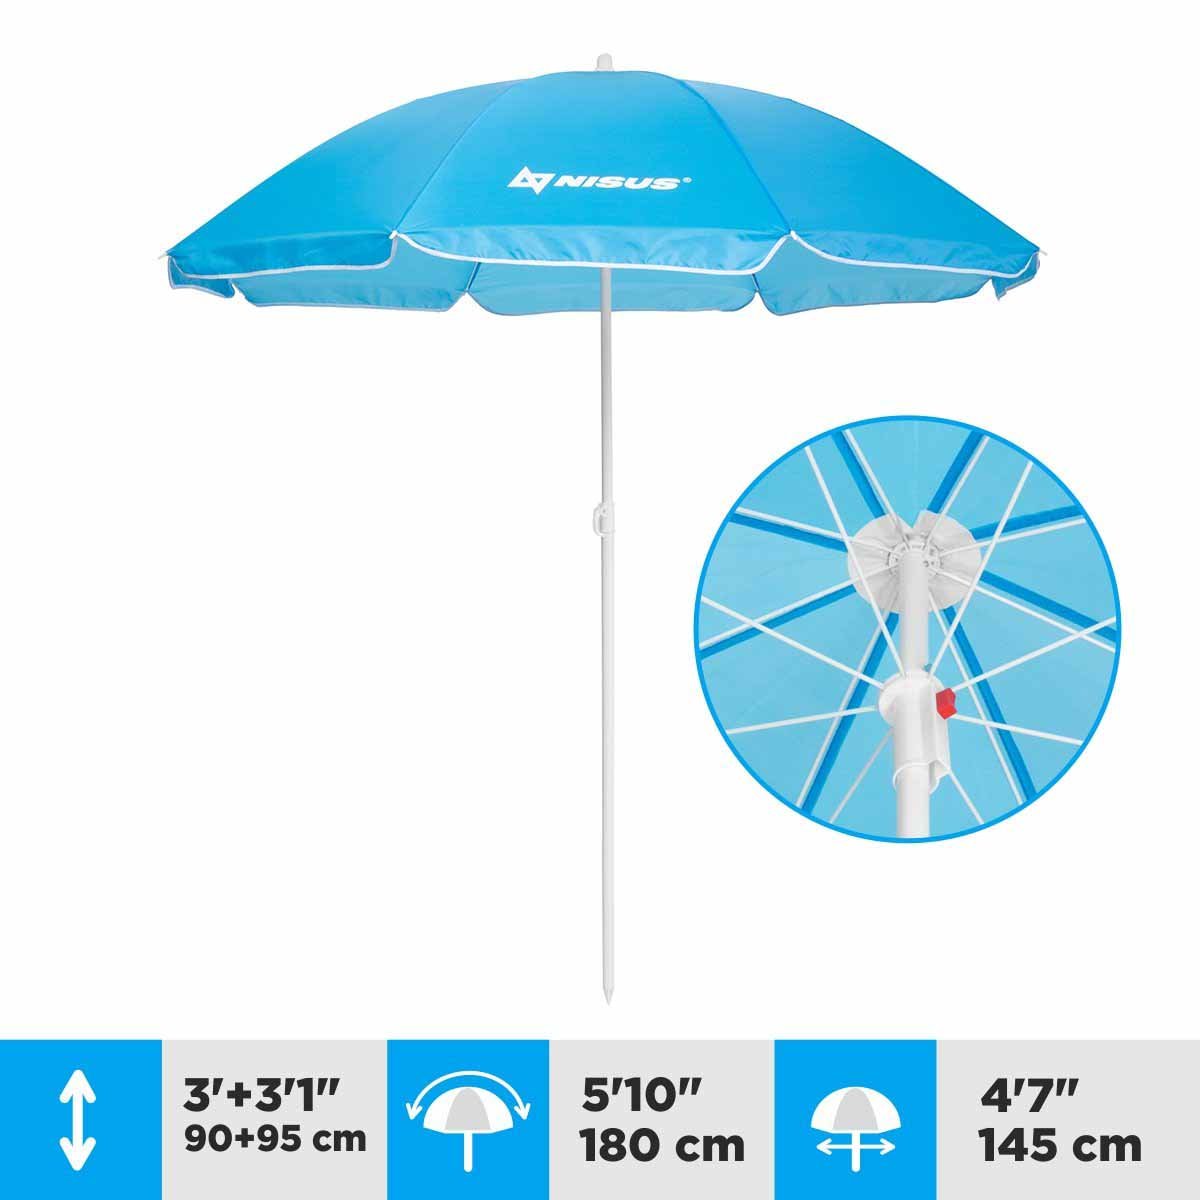 A 4.7 ft Blue Folding Beach Umbrella is 6.1 ft high